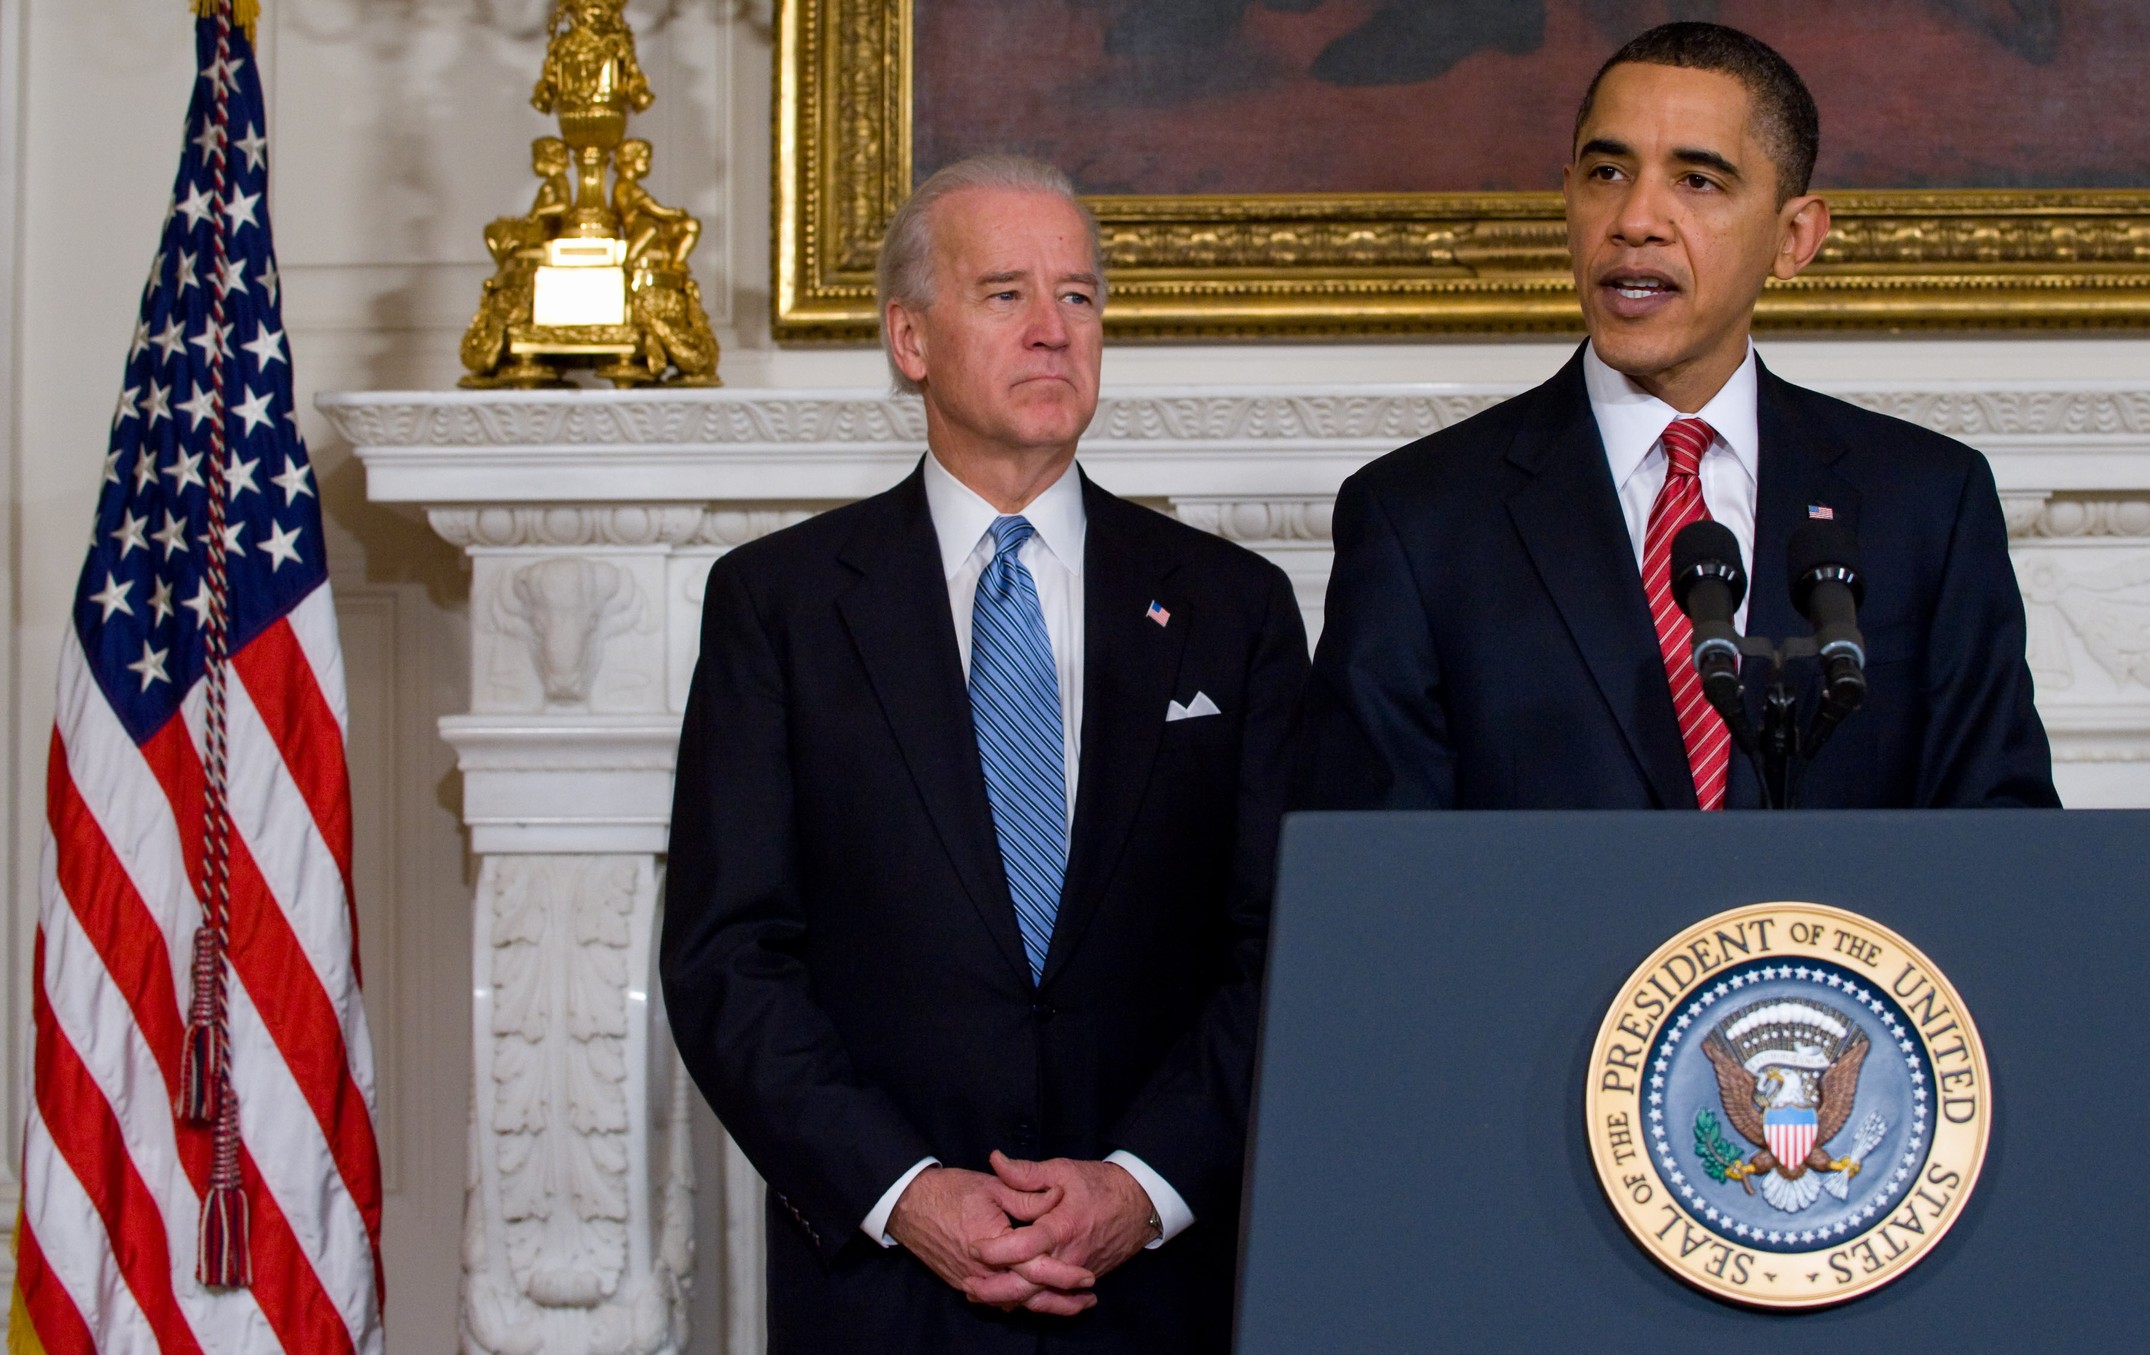 美國總統歐巴馬在參議院通過健保改革法案後發表演說。